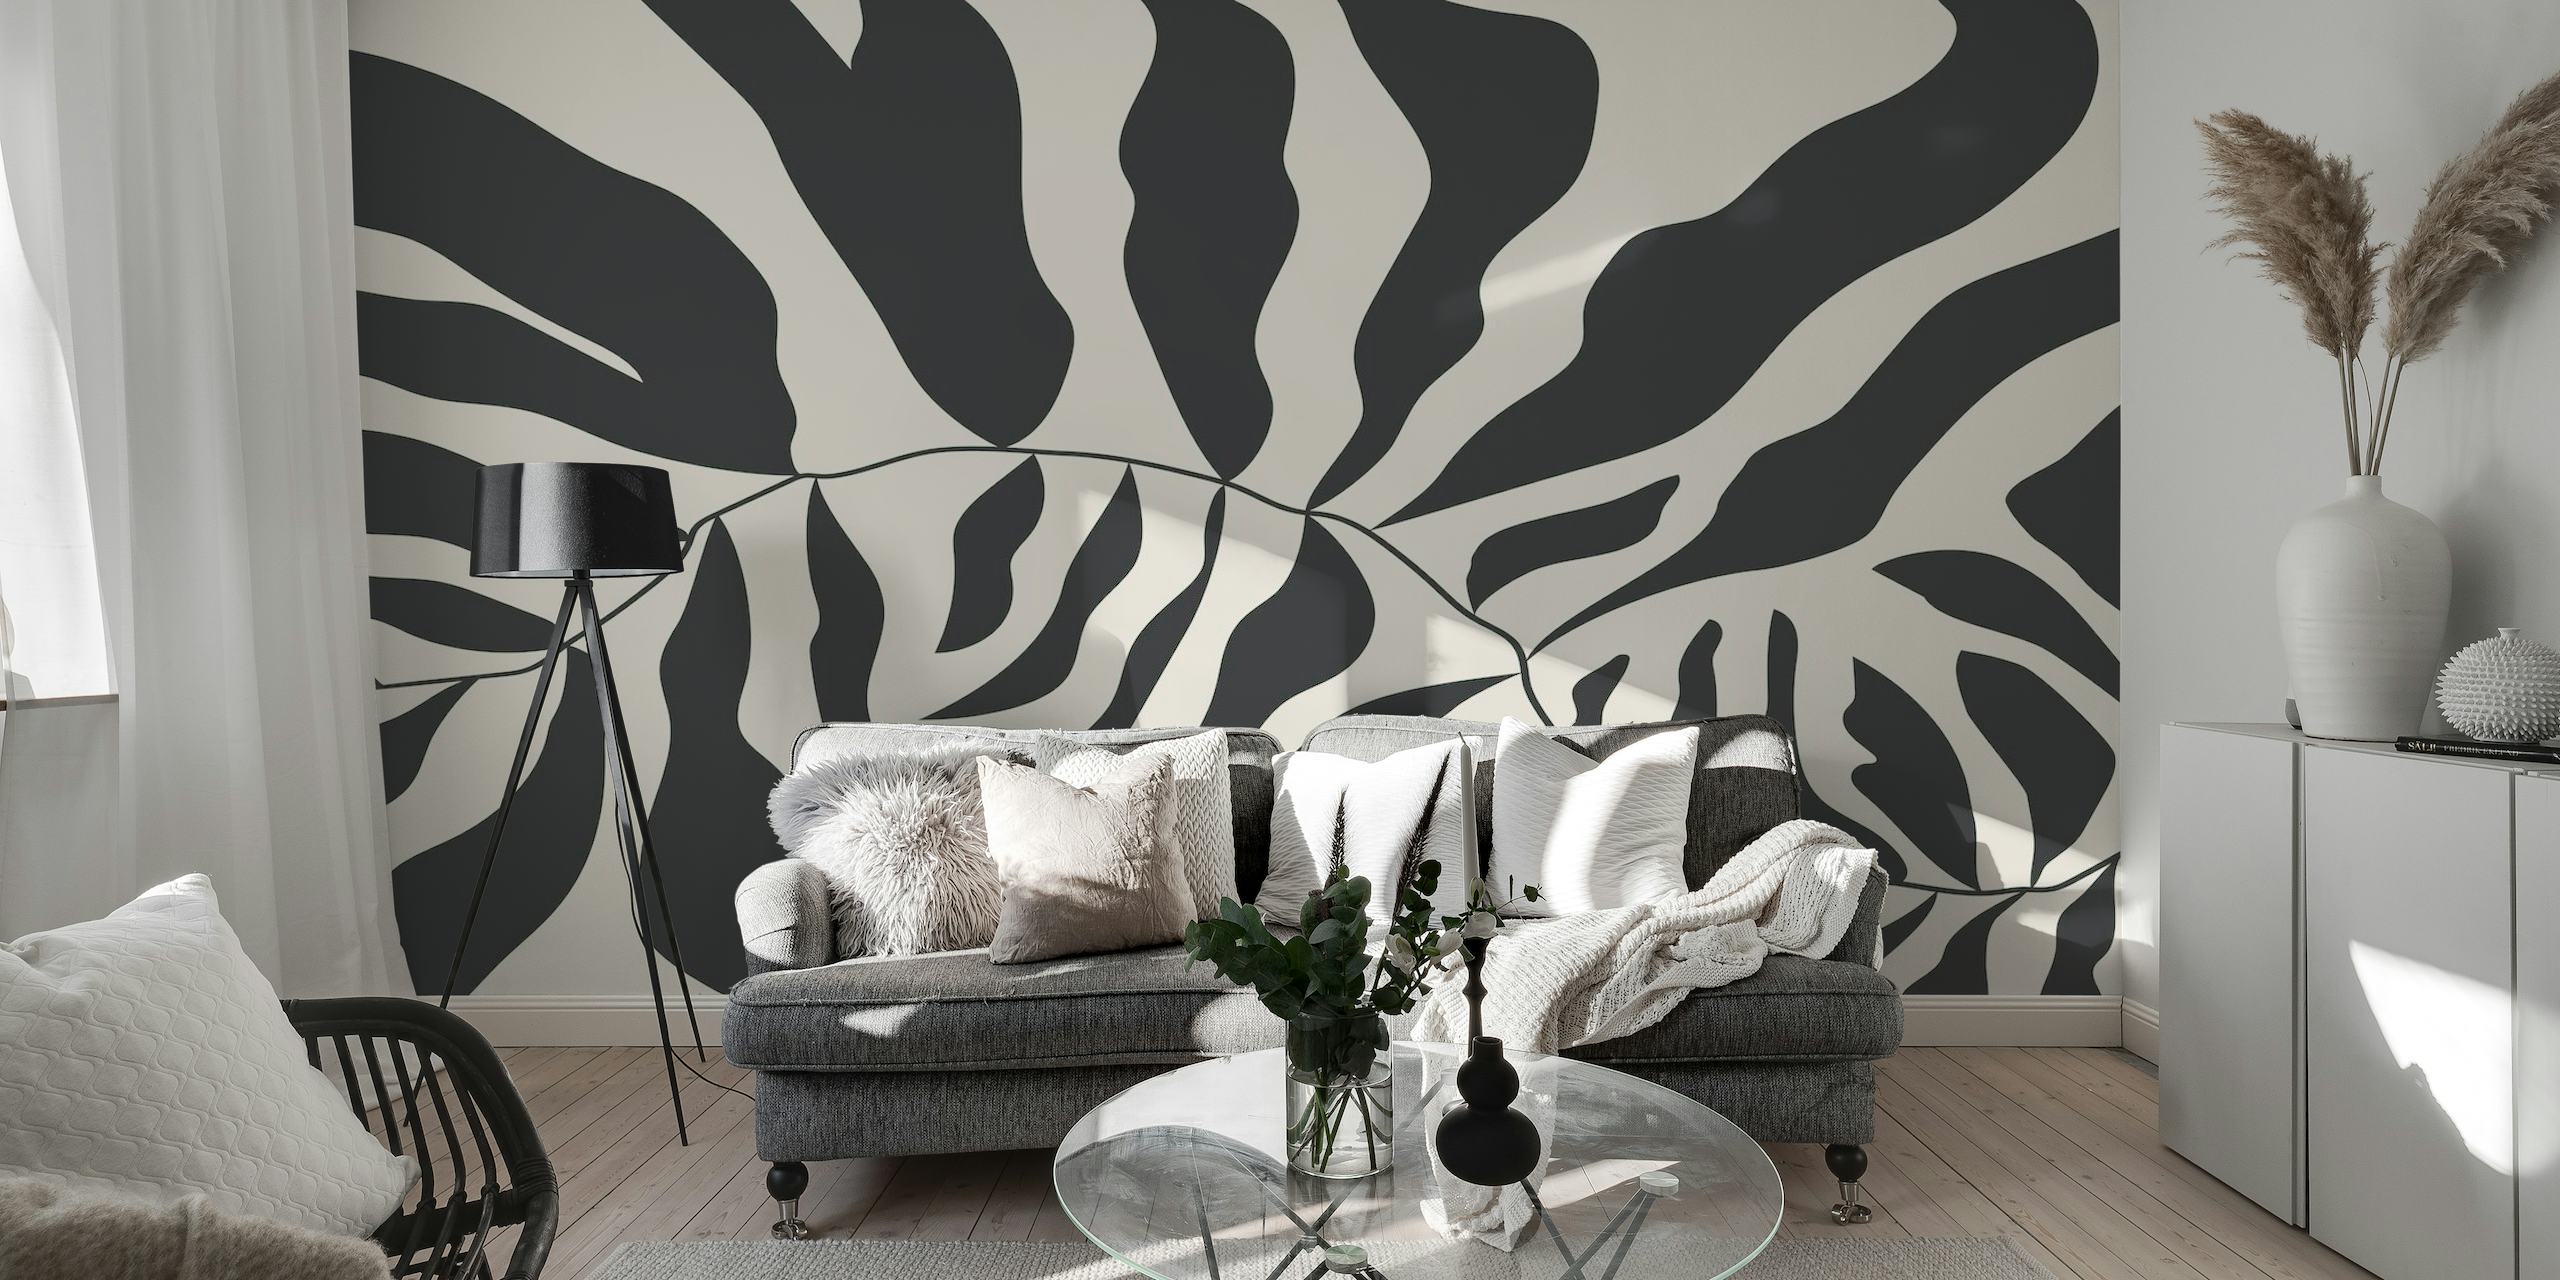 Mustavalkoinen abstrakti Matisse-tyylinen seinämaalaus, joka kuvaa orgaanisia muotoja